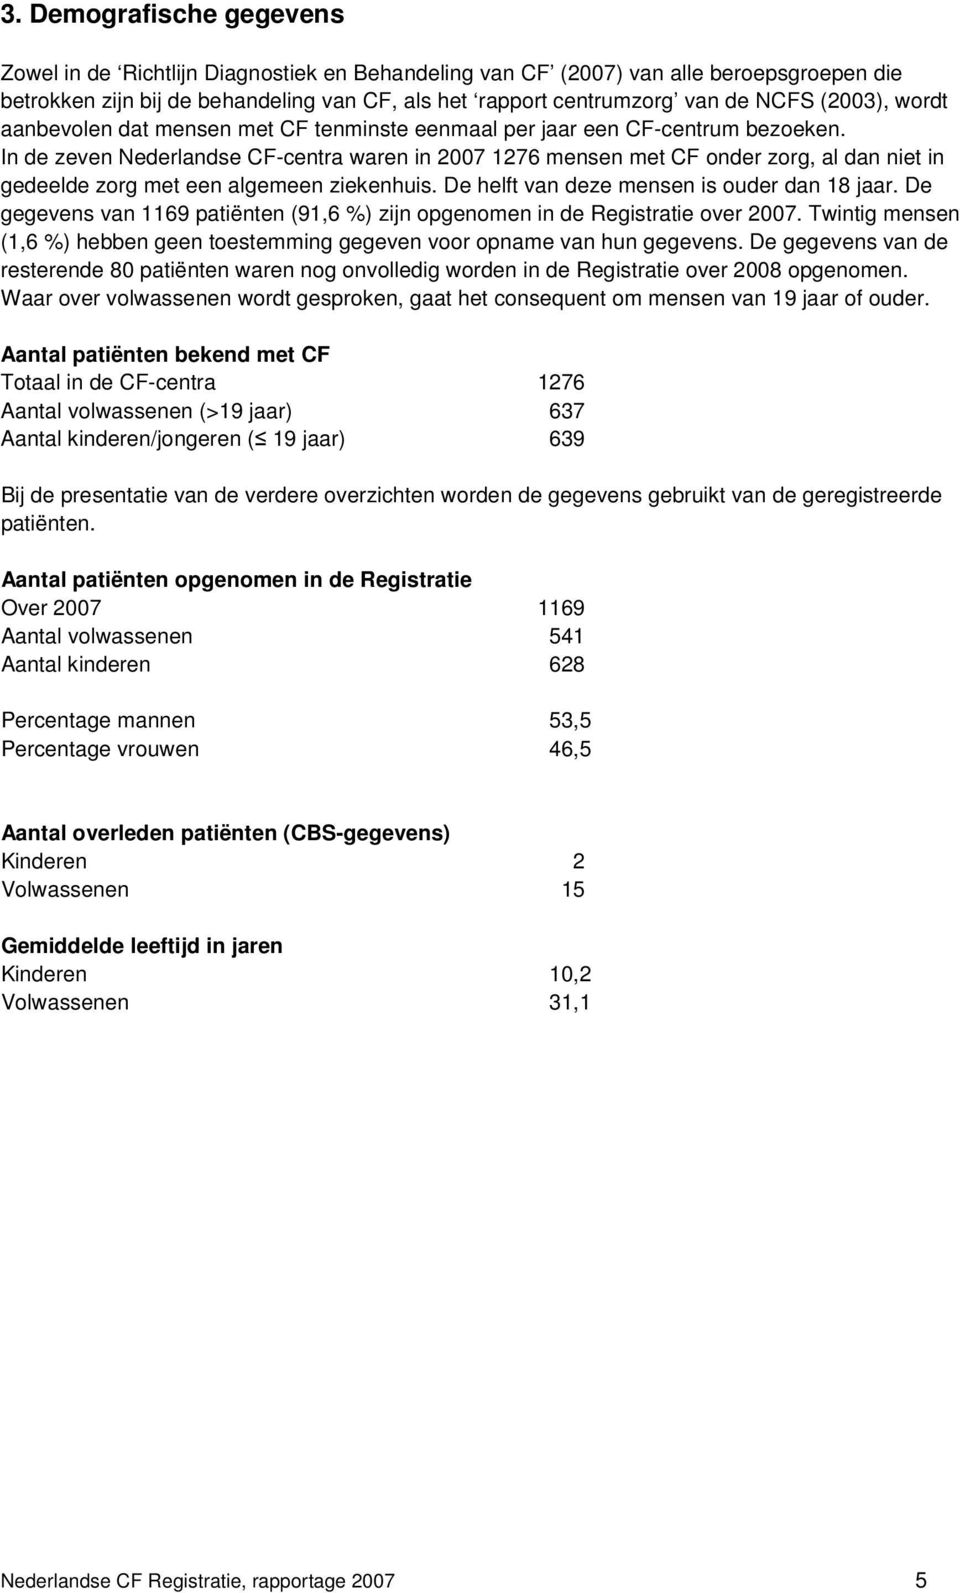 In de zeven Nederlandse CF-centra waren in 2007 1276 mensen met CF onder zorg, al dan niet in gedeelde zorg met een algemeen ziekenhuis. De helft van deze mensen is ouder dan 18 jaar.